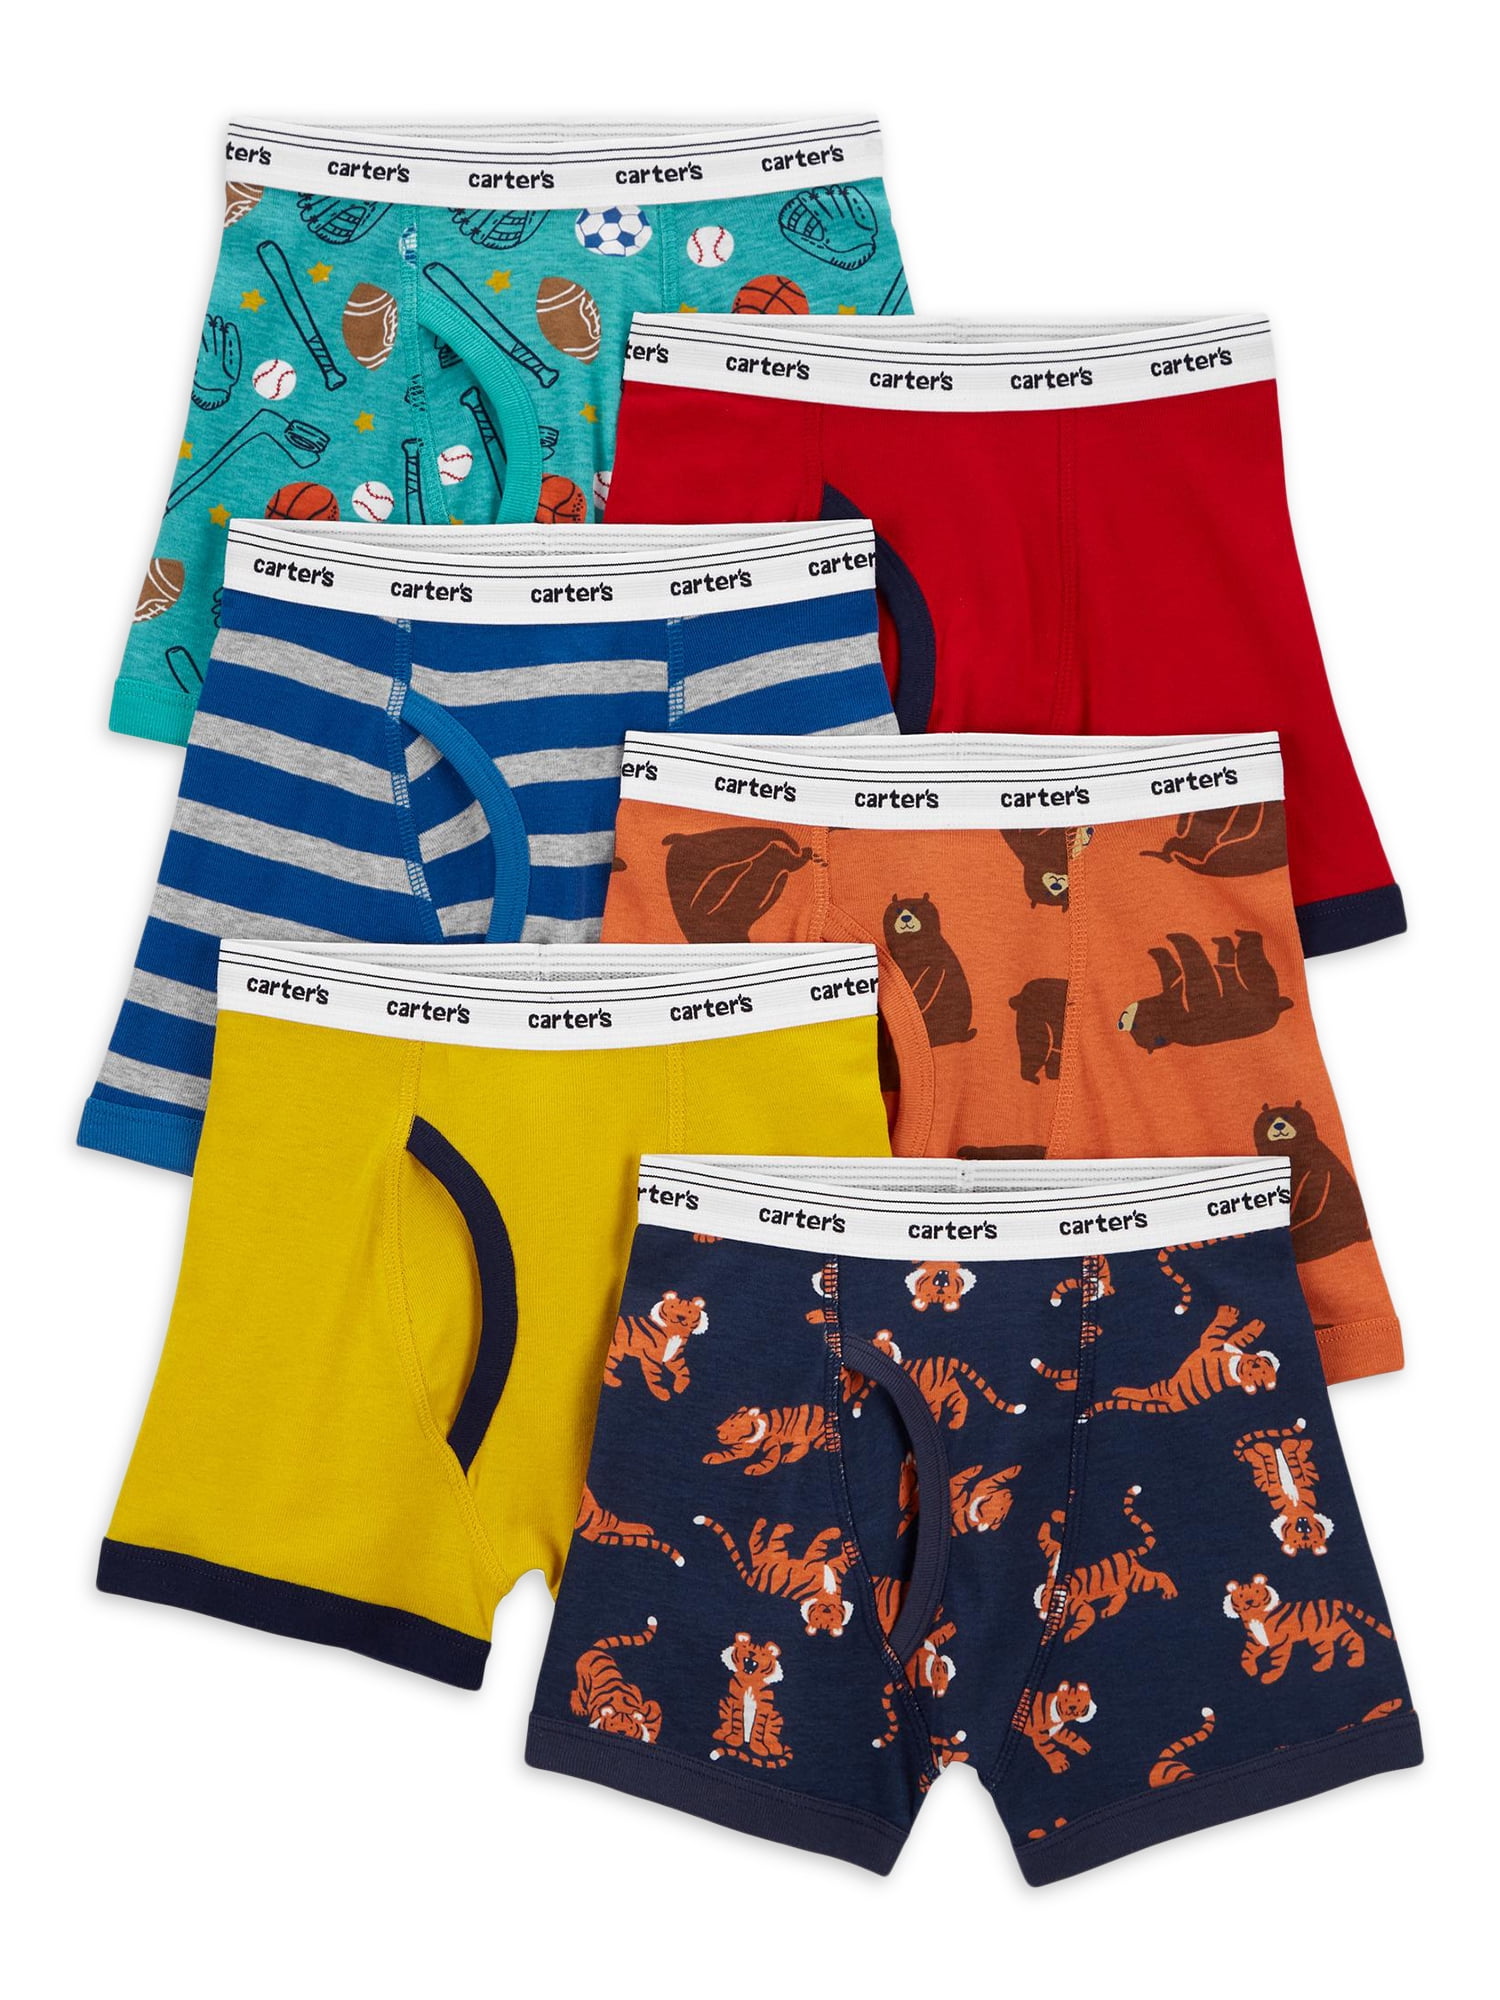 Carter's Child of Mine Toddler Boy Brief Underwear, 6 pack, Sizes 2T-5T